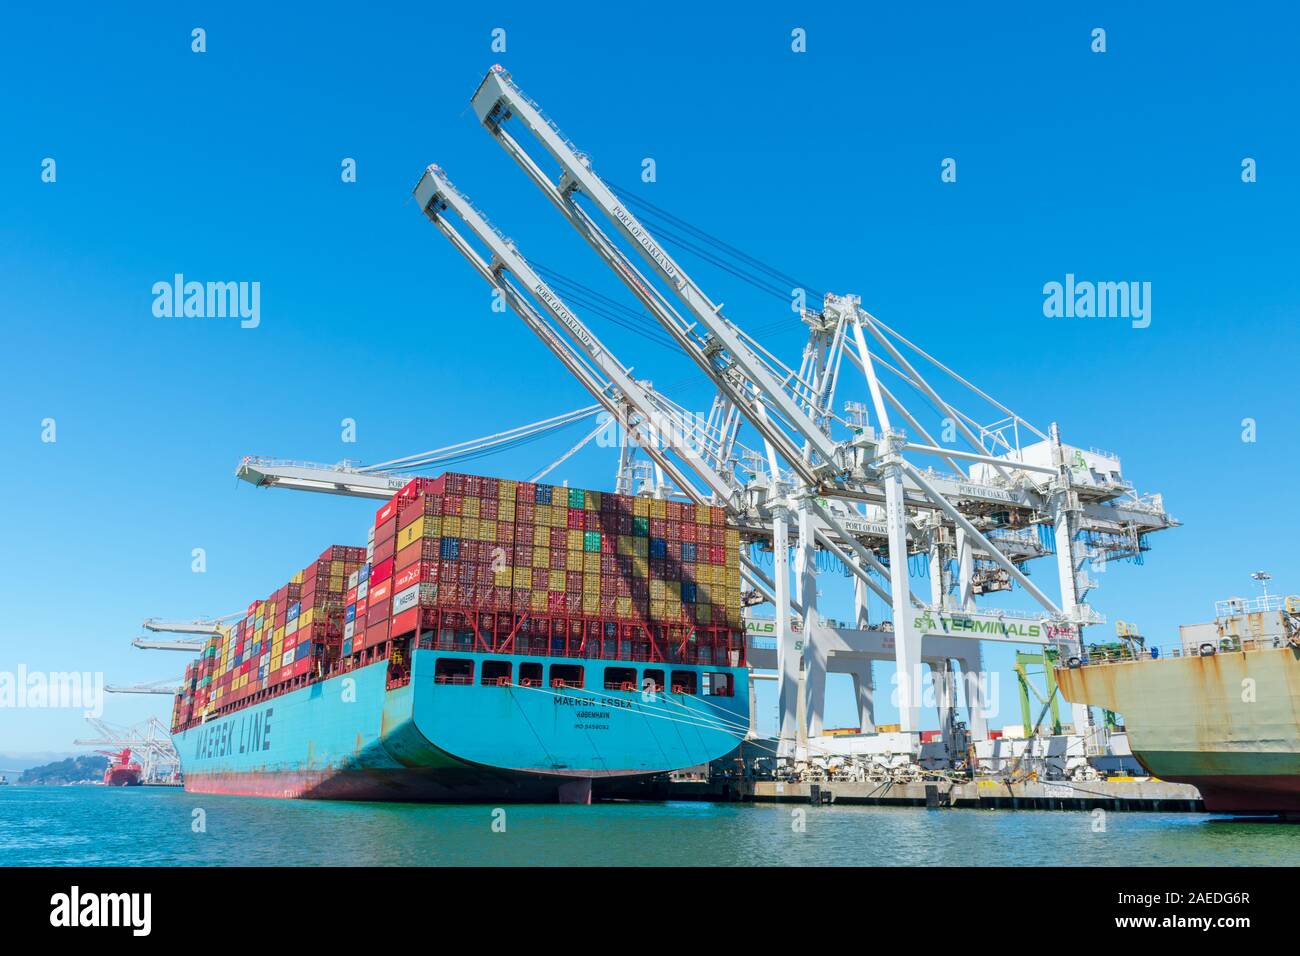 Grues de déchargement des conteneurs conteneurs Maersk Essex exploitées par Maersk Line à Oakland International Container Terminal sous ciel bleu - Oakl Banque D'Images